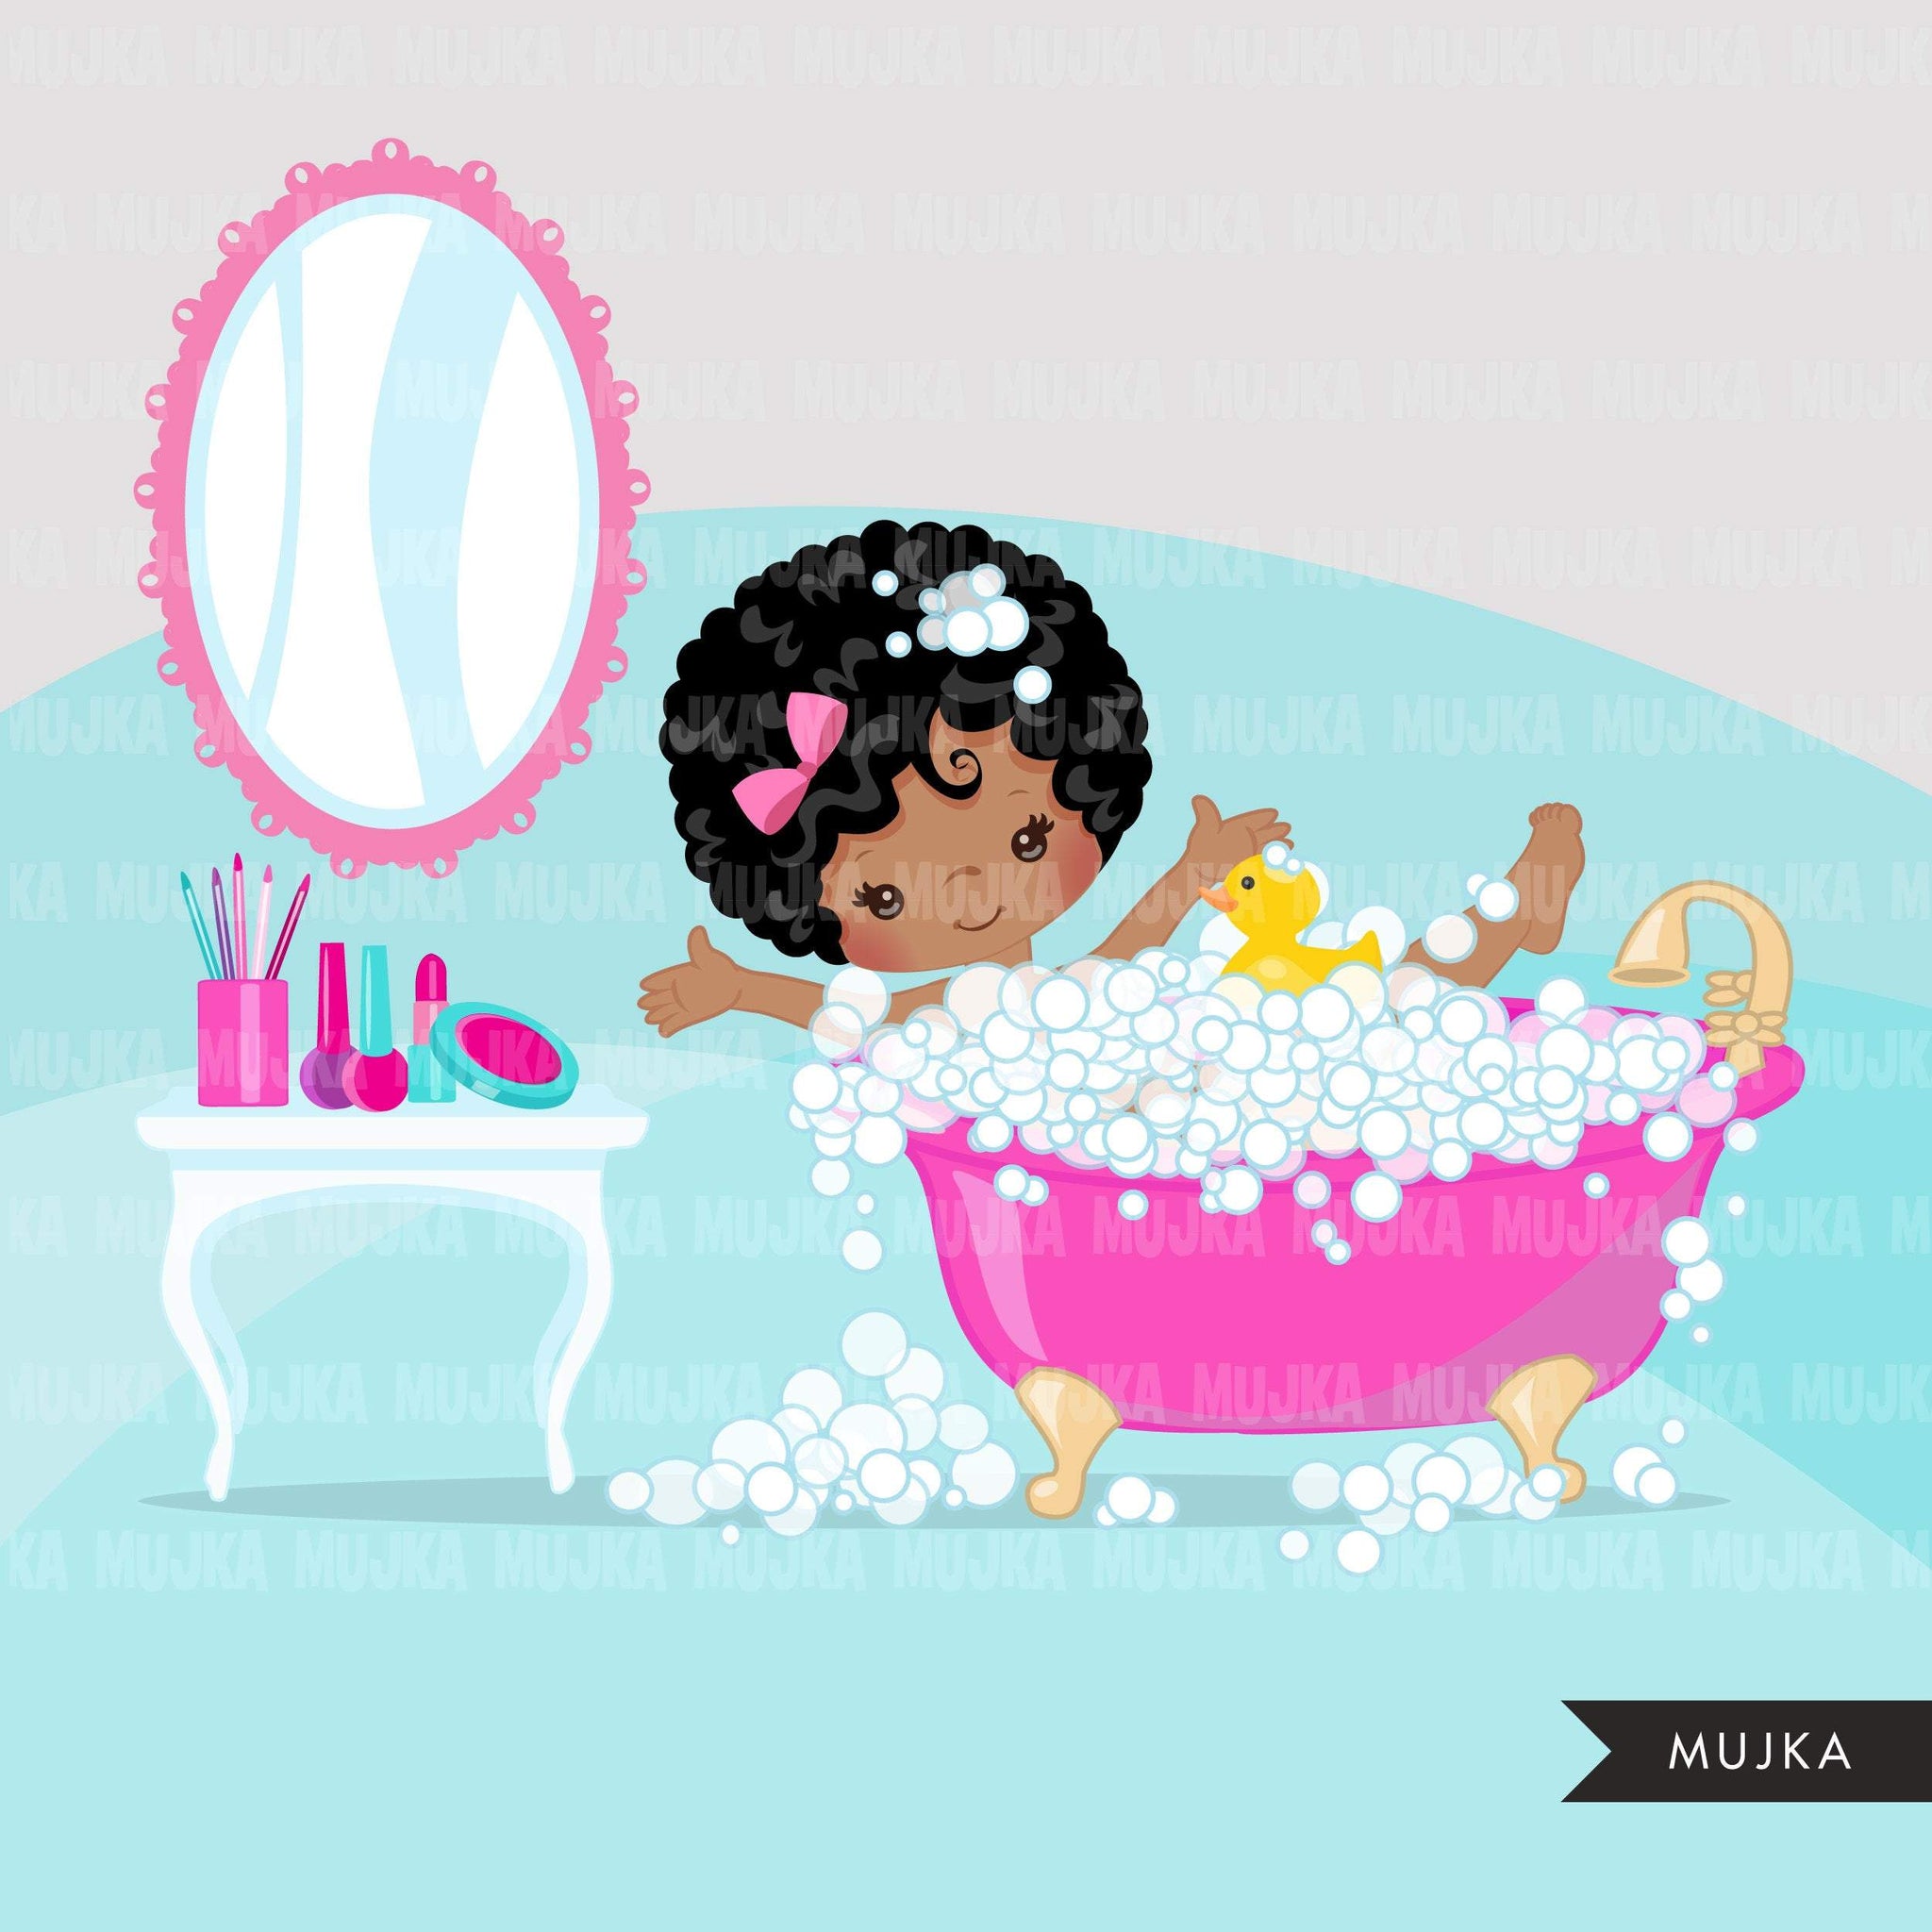 Imágenes prediseñadas de spa, elementos de spa fiesta gráficos de chicas negras, baño de burbujas, bañera, esmalte de uñas, cumpleaños de spa, gráficos, imágenes prediseñadas de uso comercial